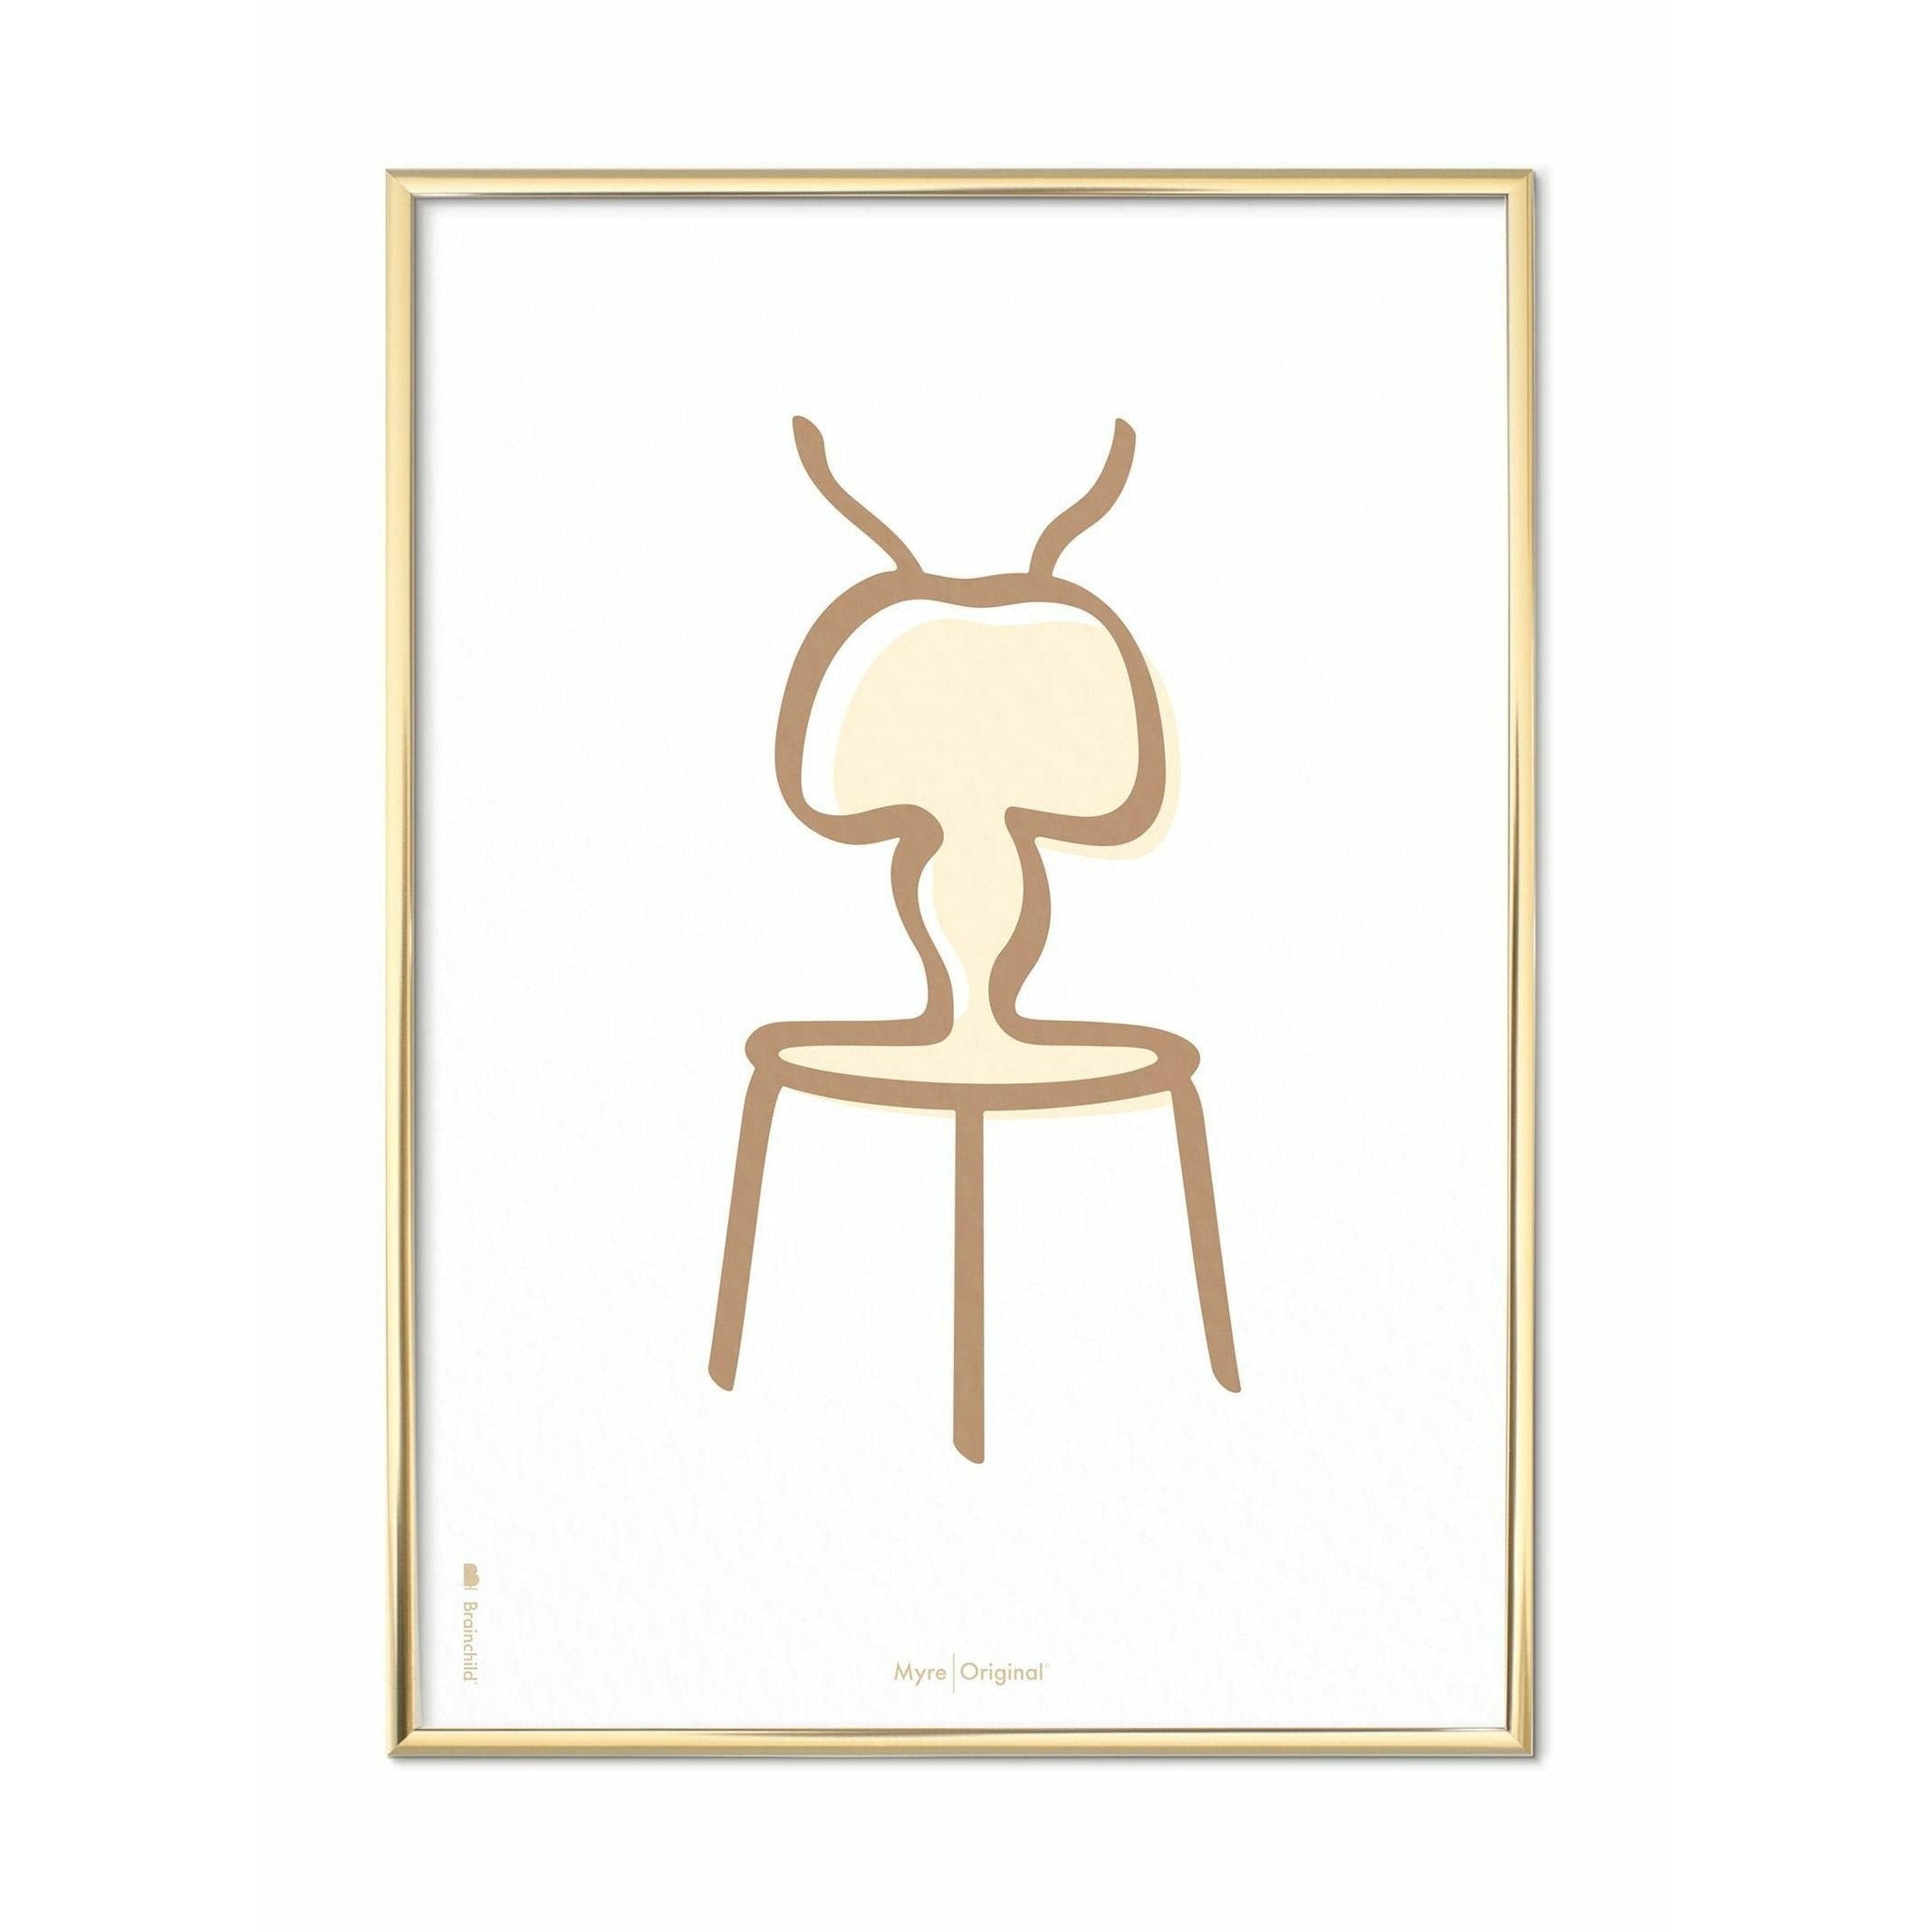 Plakát Ant Line Brainchild, mosazný barevný rám 70 x100 cm, bílé pozadí